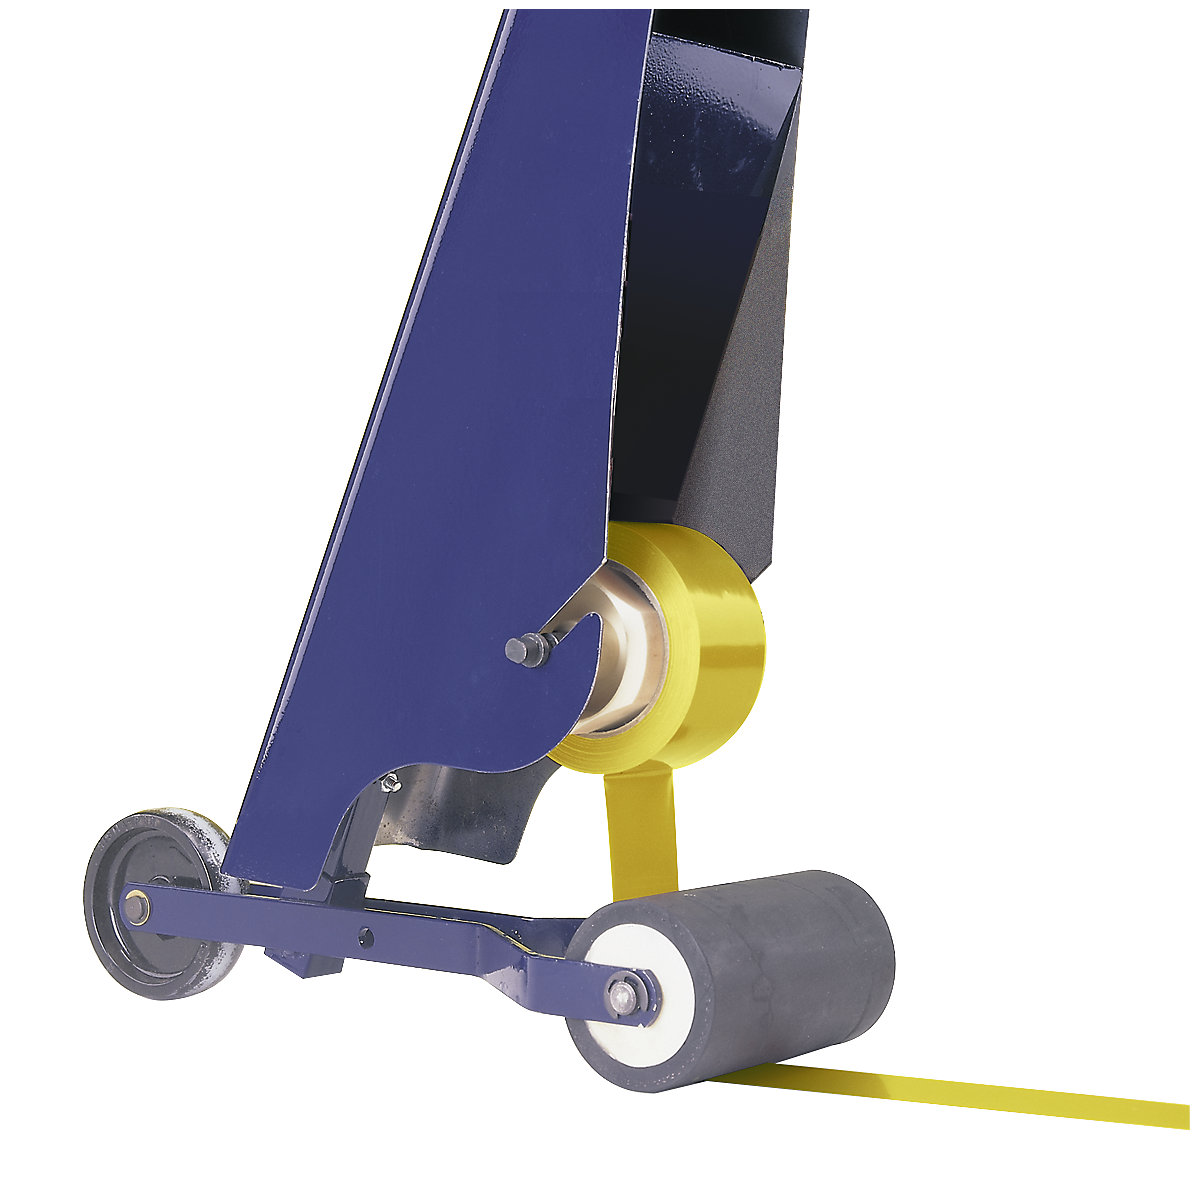 Conjunto de marcação, aparelho de marcação para pavimentos e fita de marcação para chão, cor da fita amarelo-7